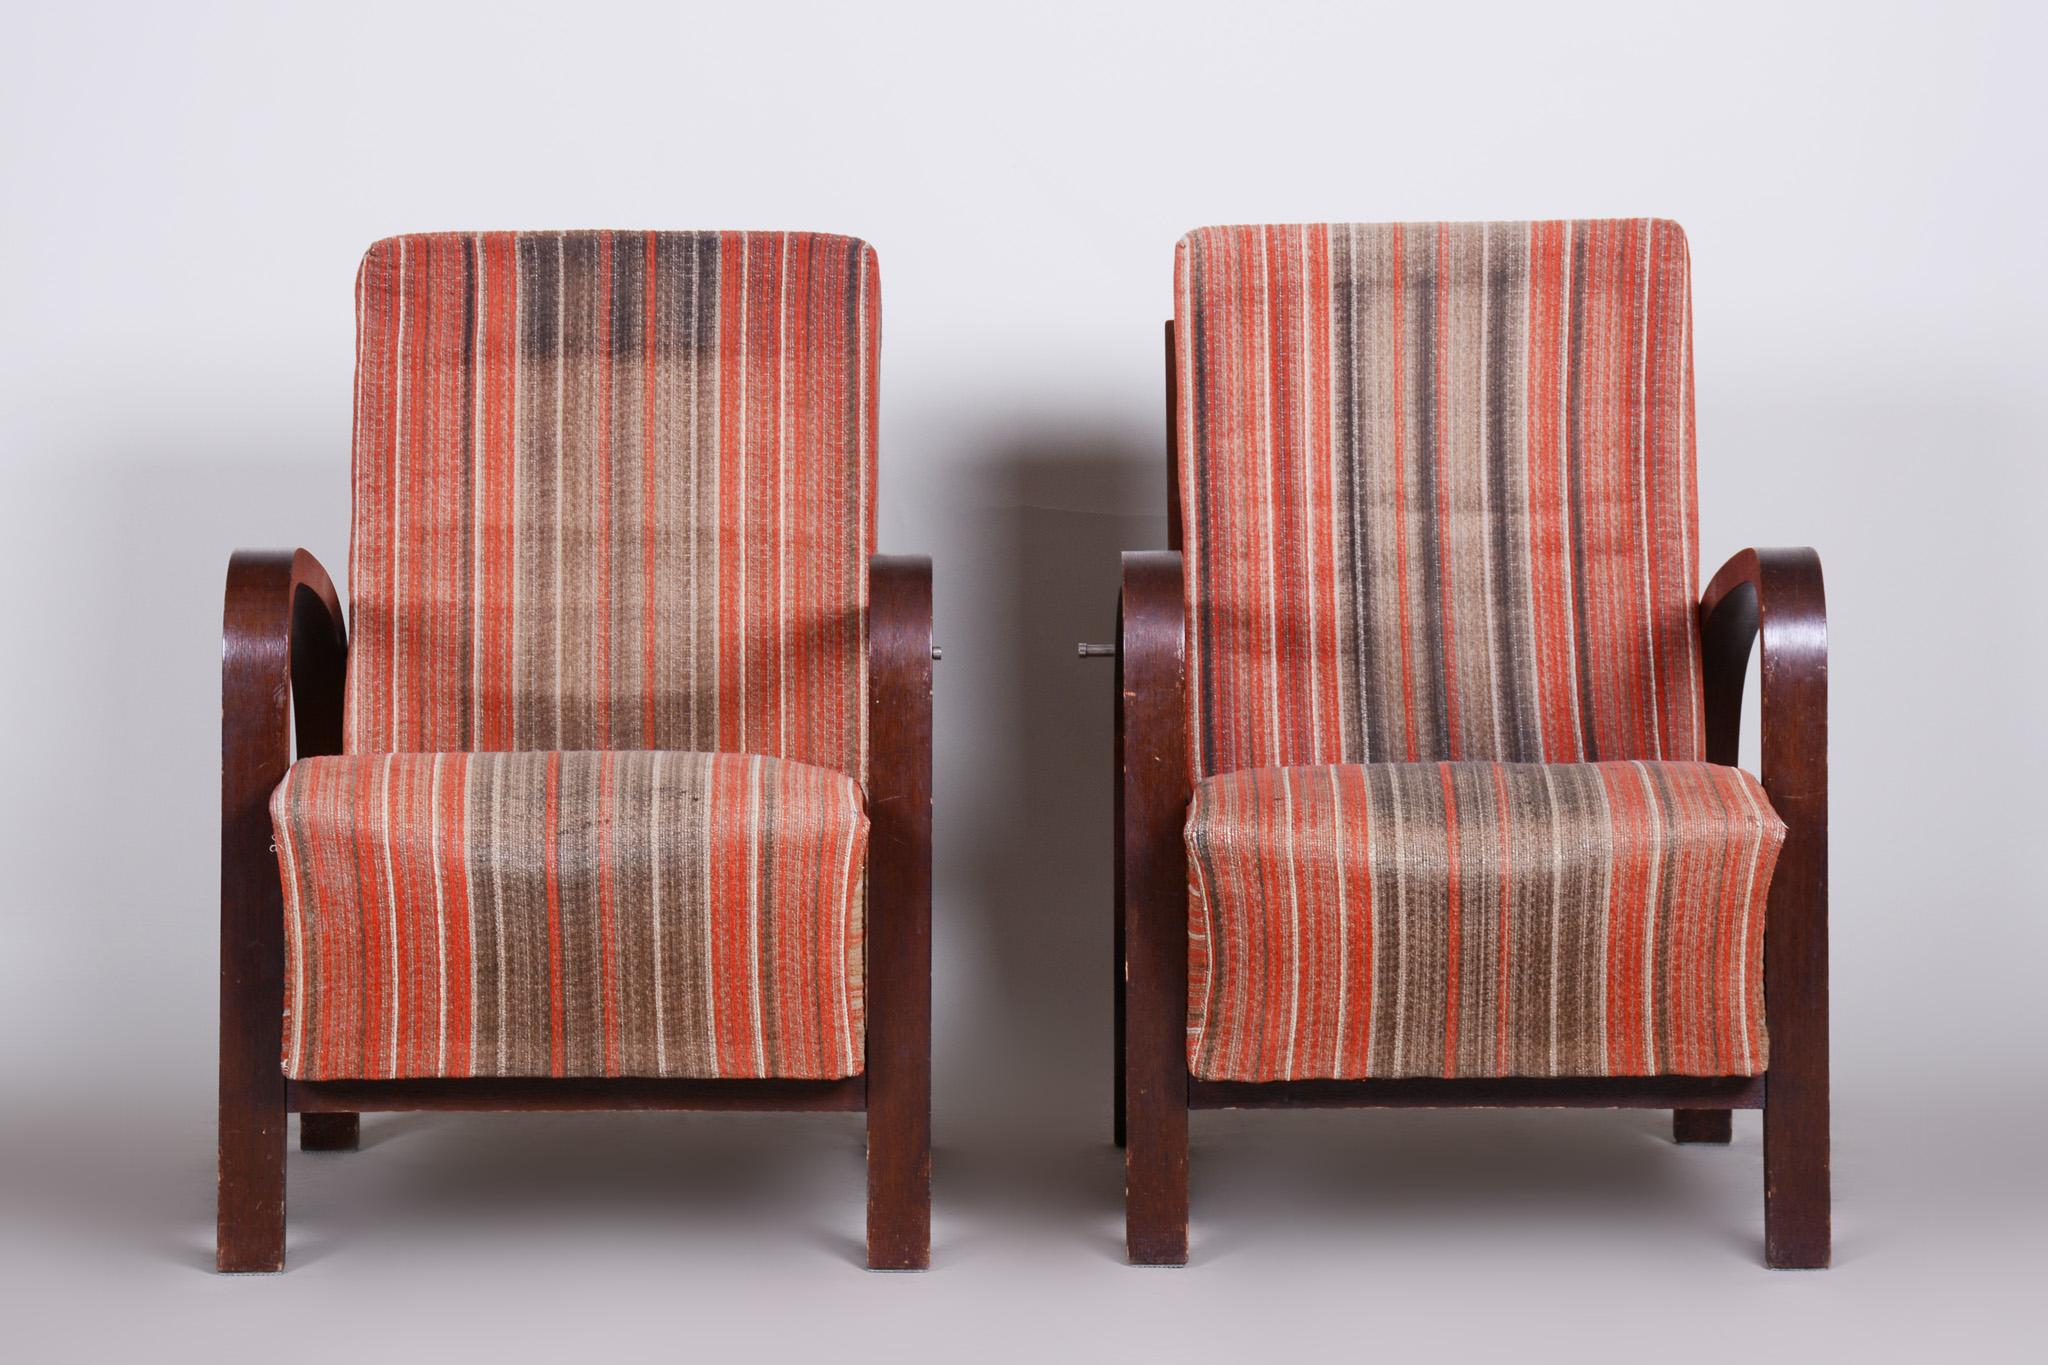 Paire de fauteuils Art Déco
Source : Tchécoslovaquie (République tchèque)
Période : 1930-1939.
Matériau : Chêne
État original bien conservé.